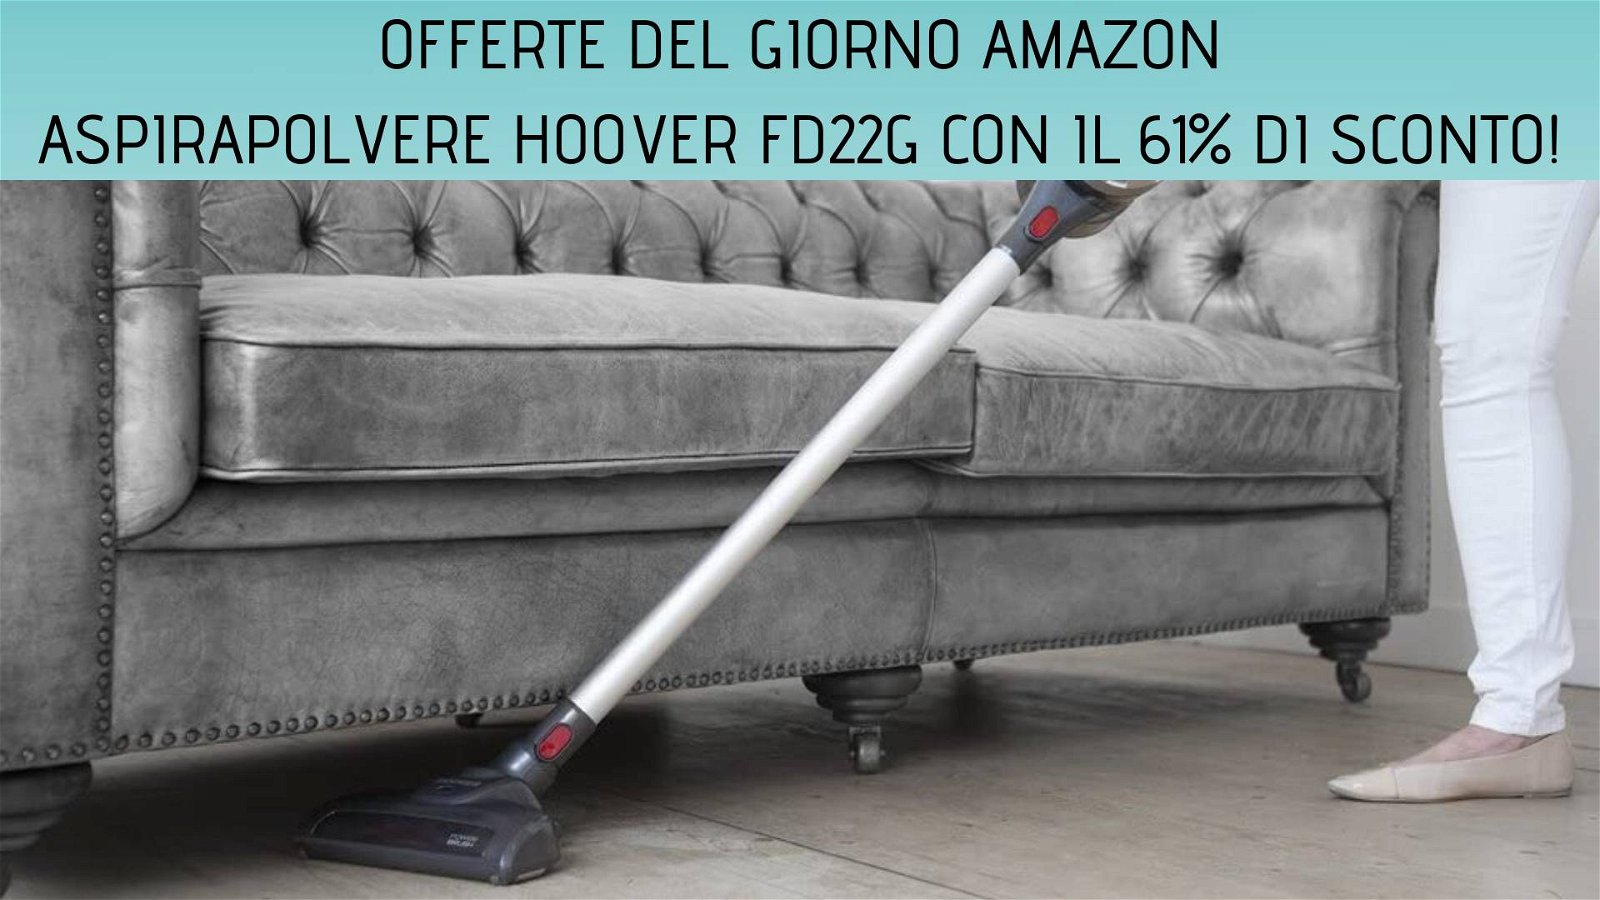 Immagine di Offerte del giorno Amazon: aspirapolvere senza filo Hoover FD22G con il 61% di sconto!